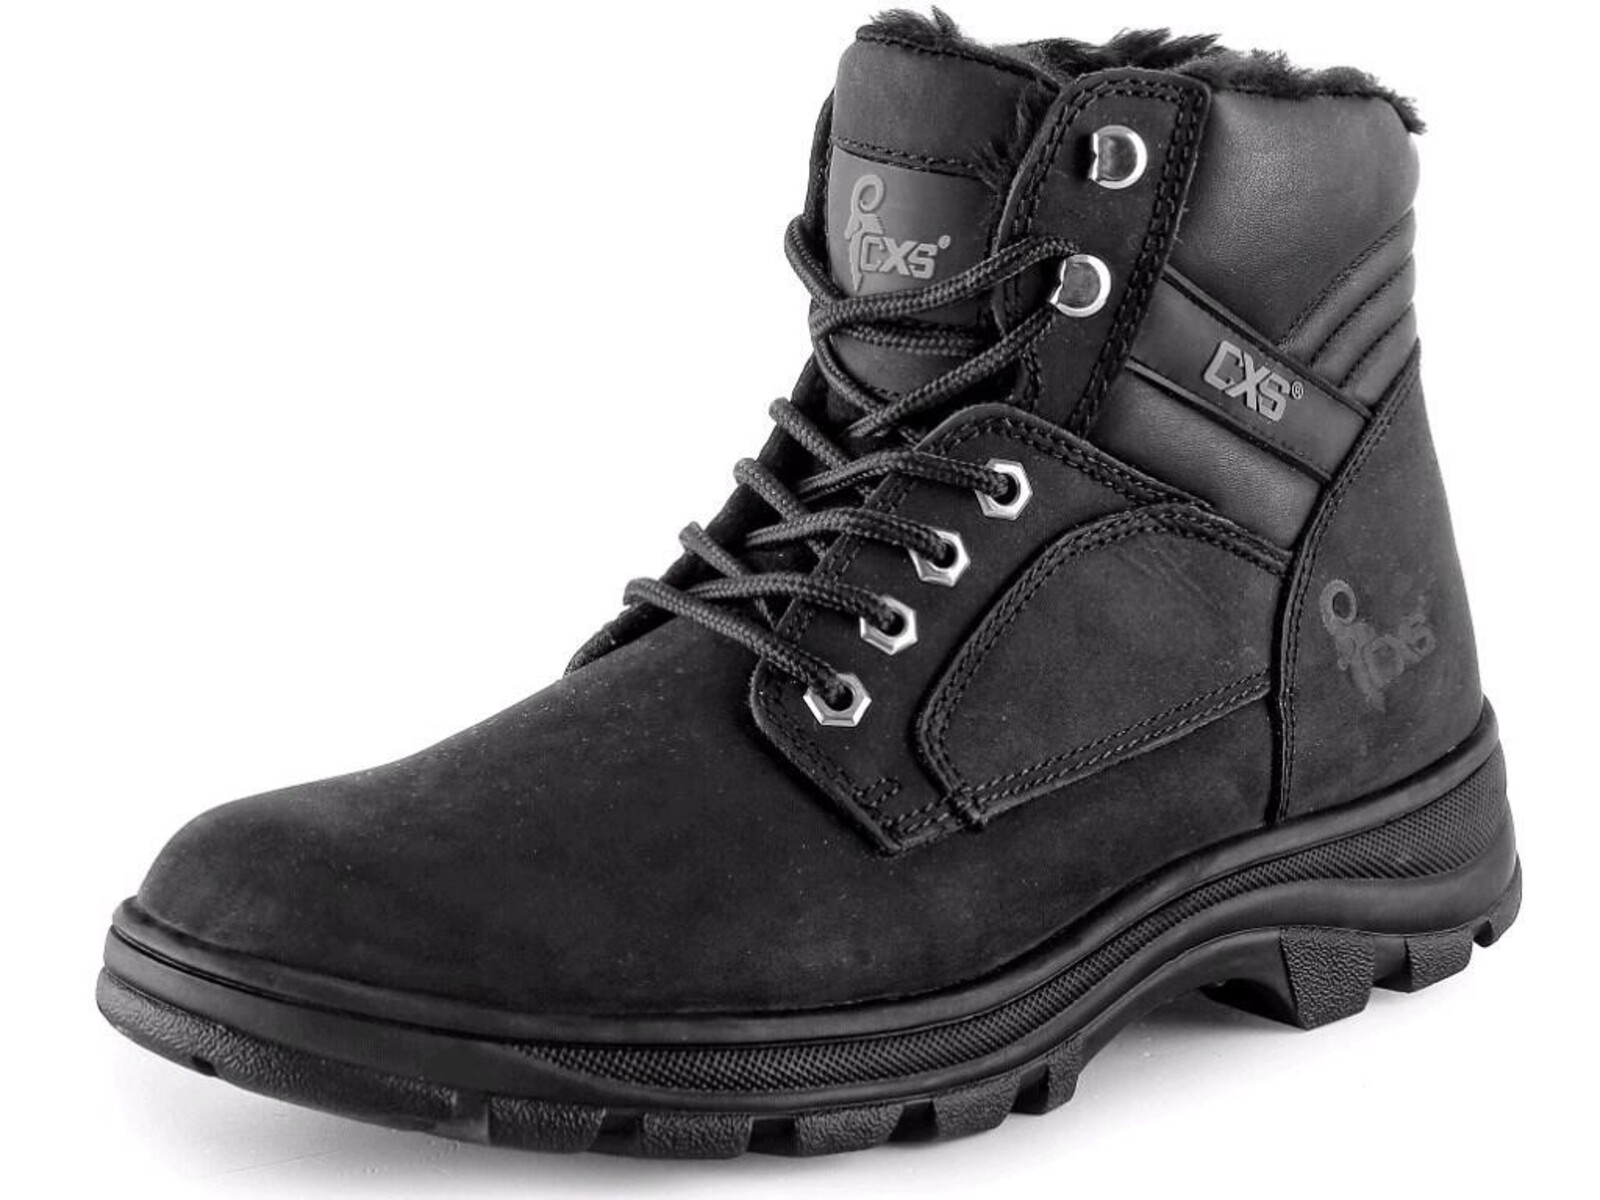 Zimná členková obuv CXS Road Industry FO E CI SRA - veľkosť: 42, farba: čierna